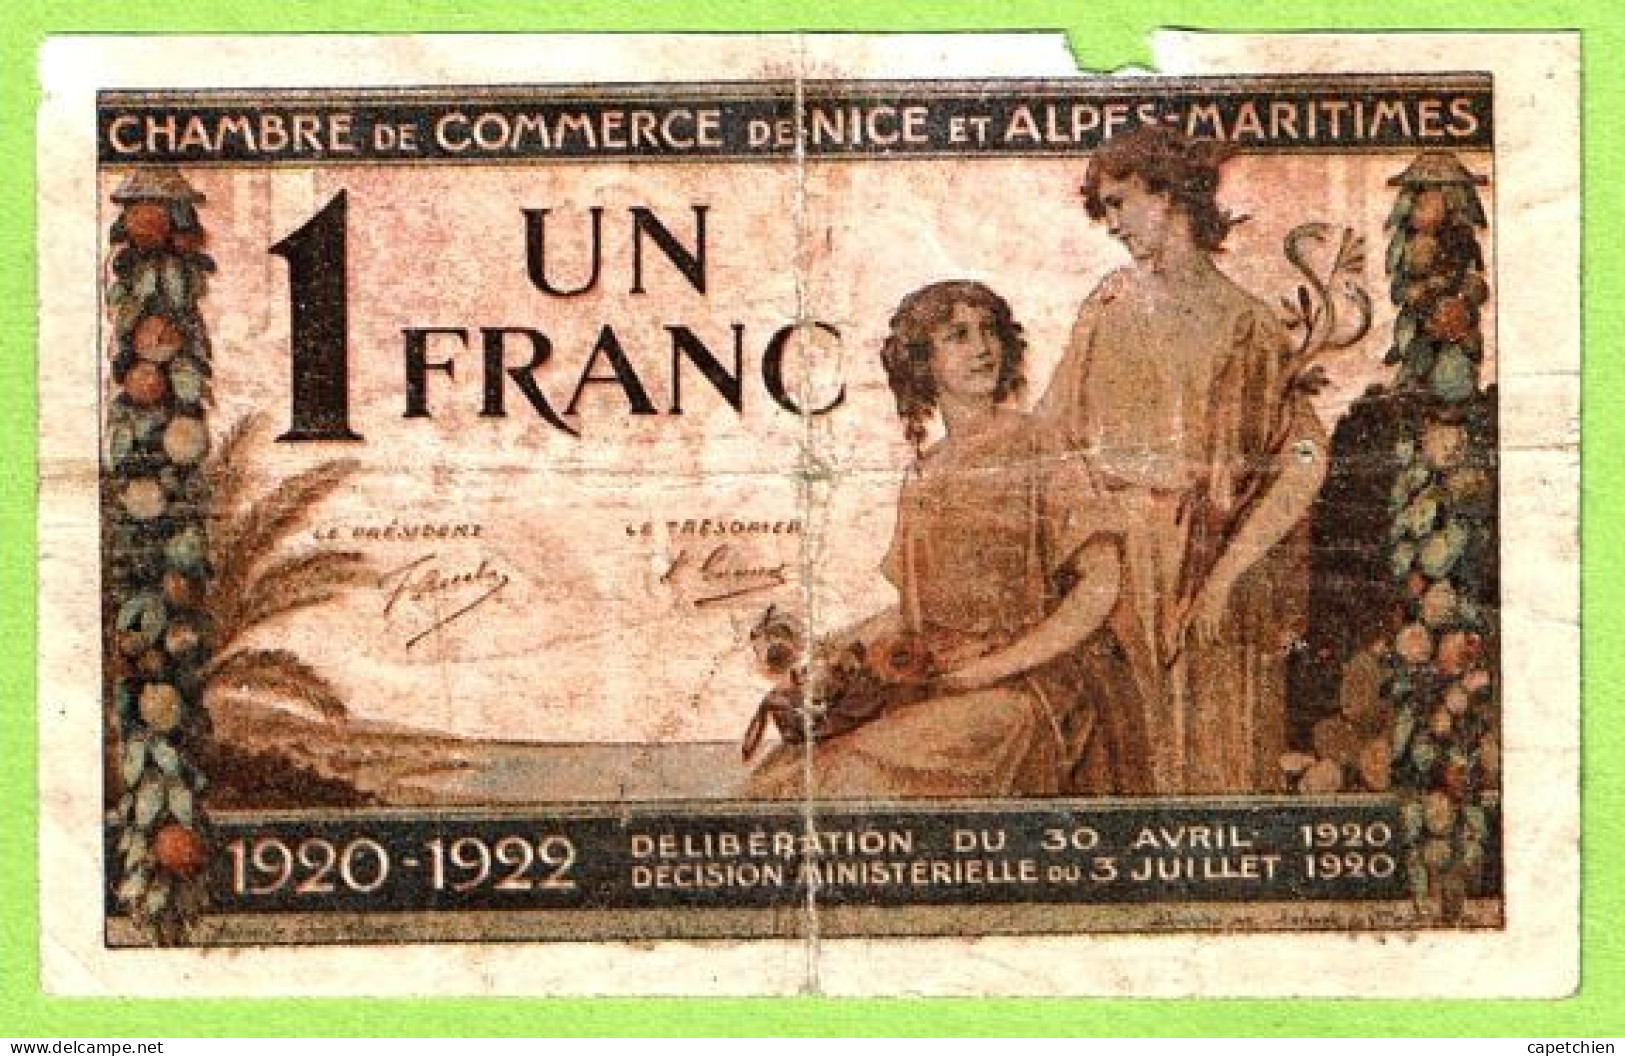 FRANCE / CHAMBRE De COMMERCE / NICE - ALPES MARITIMES / 1 FRANC / 30 AVRIL 1920 / N° 0.023.744 / SERIE 110 - Chambre De Commerce